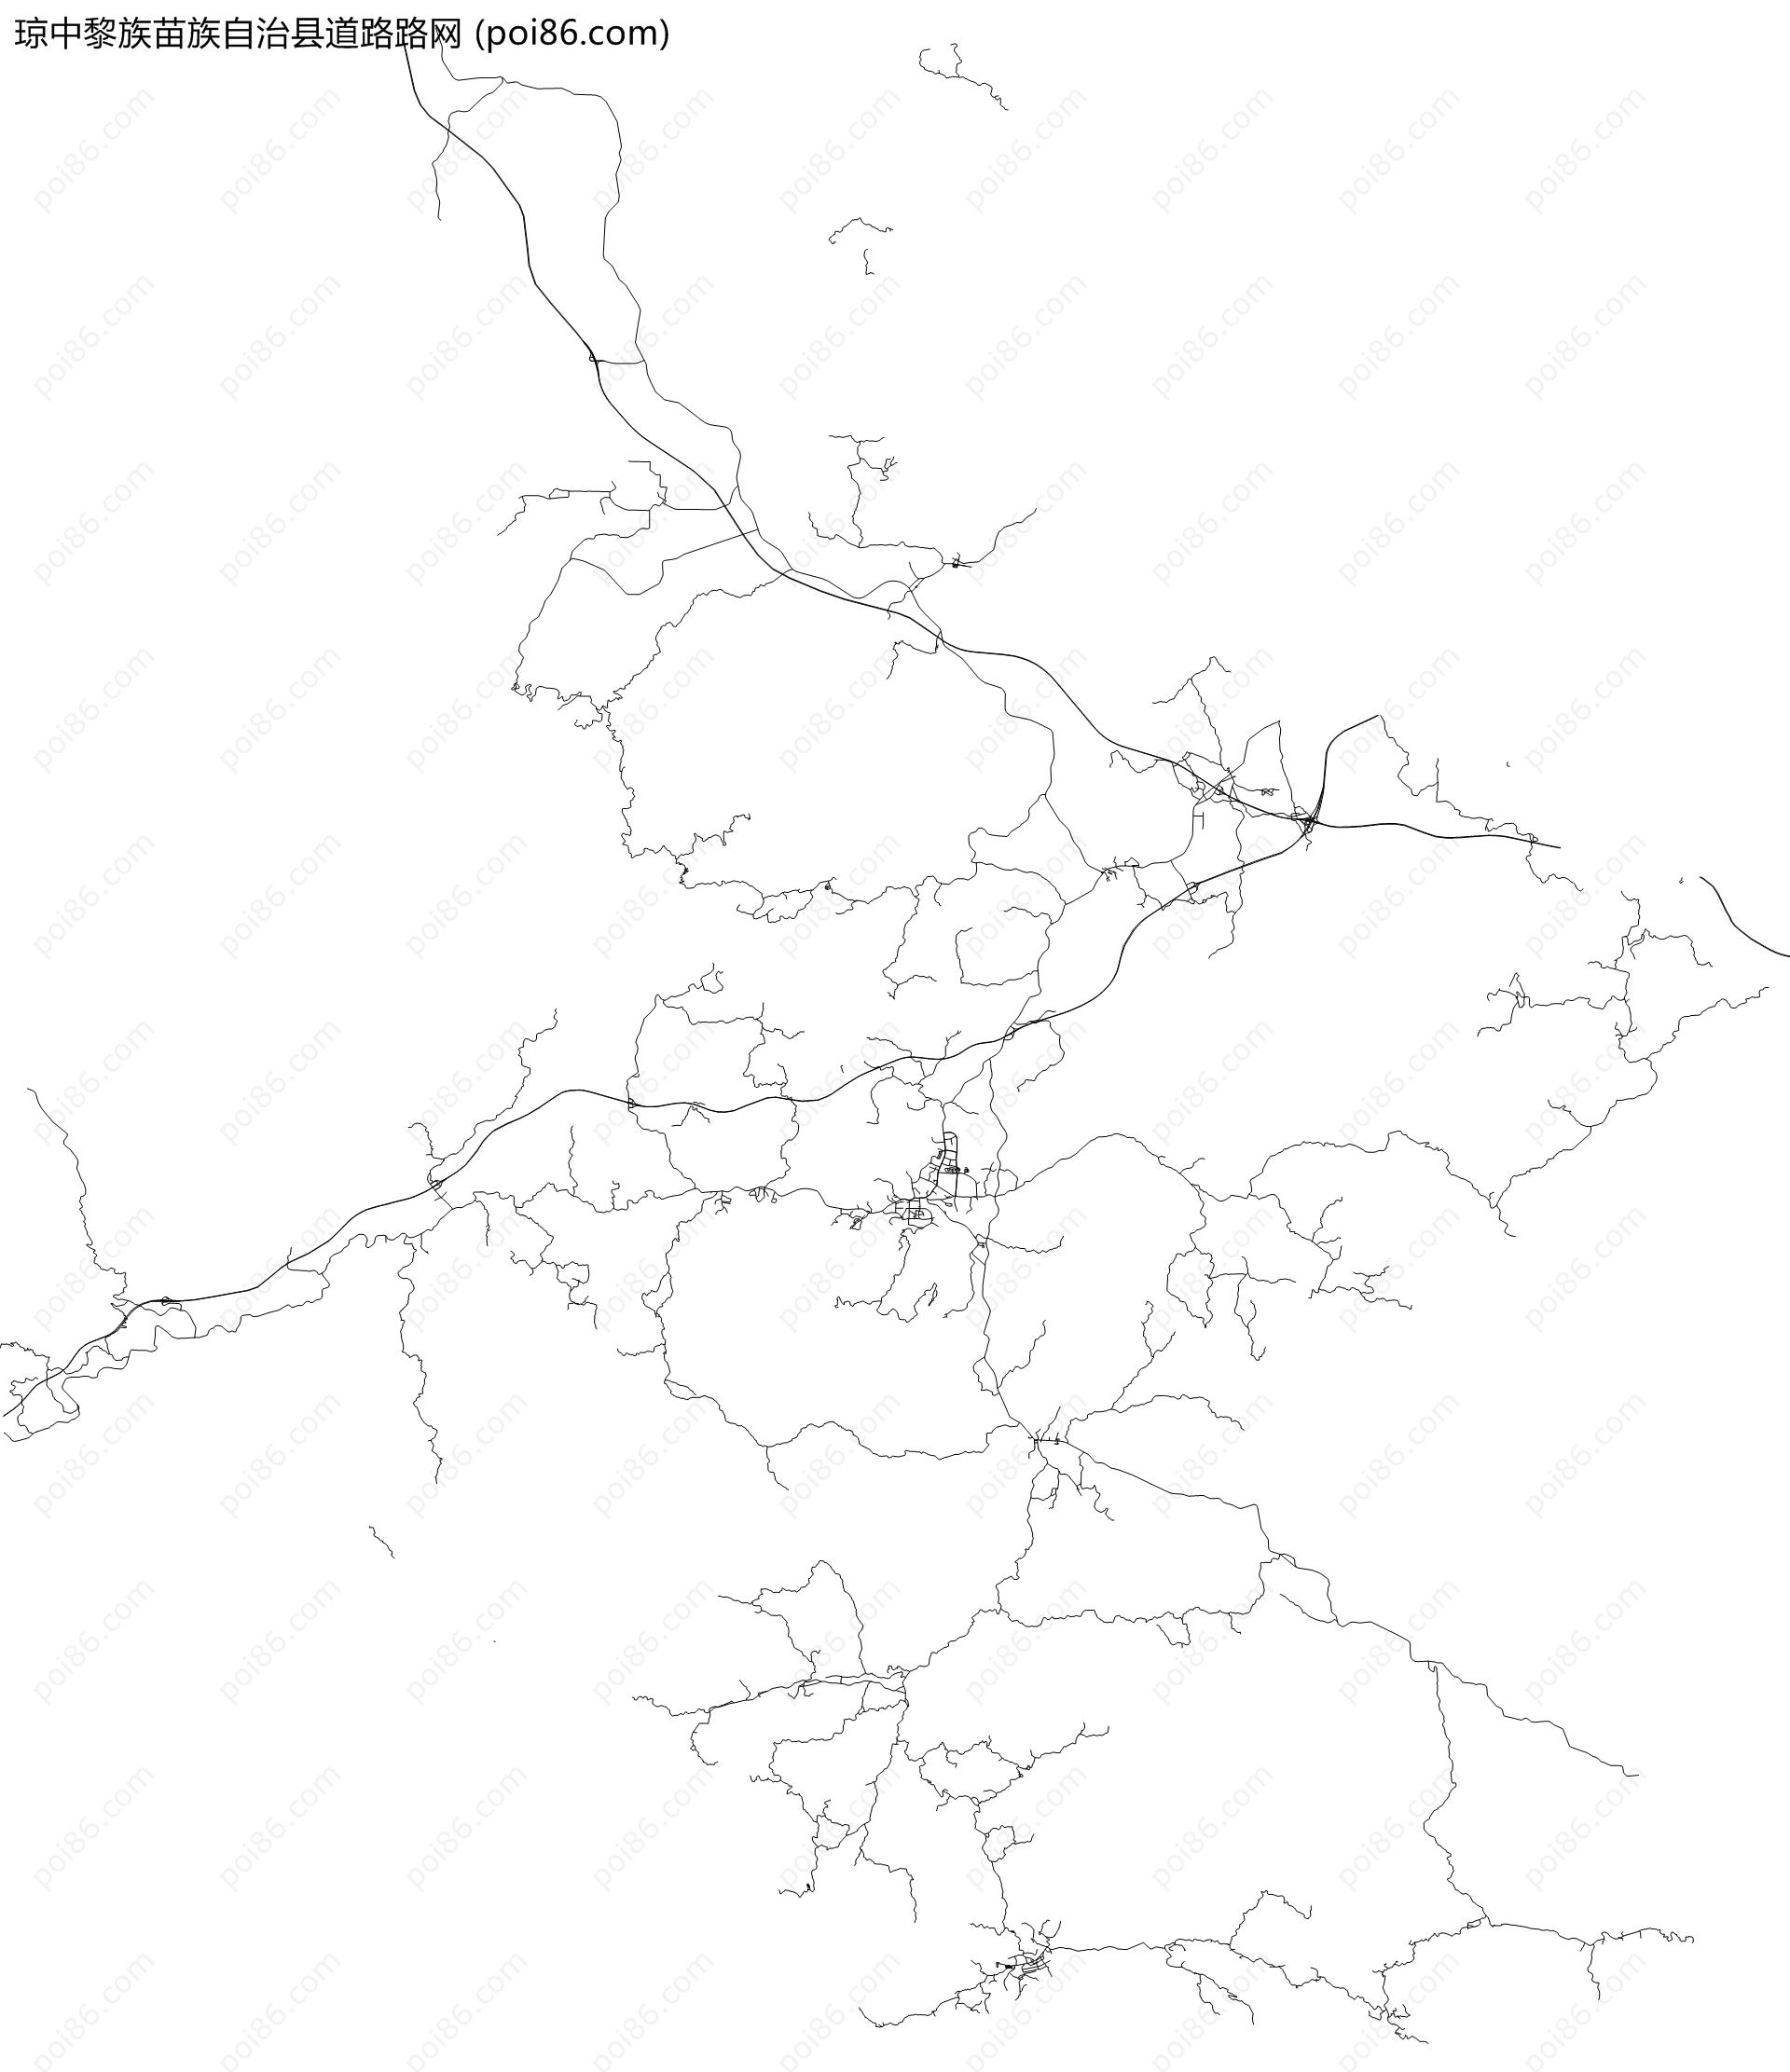 琼中黎族苗族自治县道路路网地图